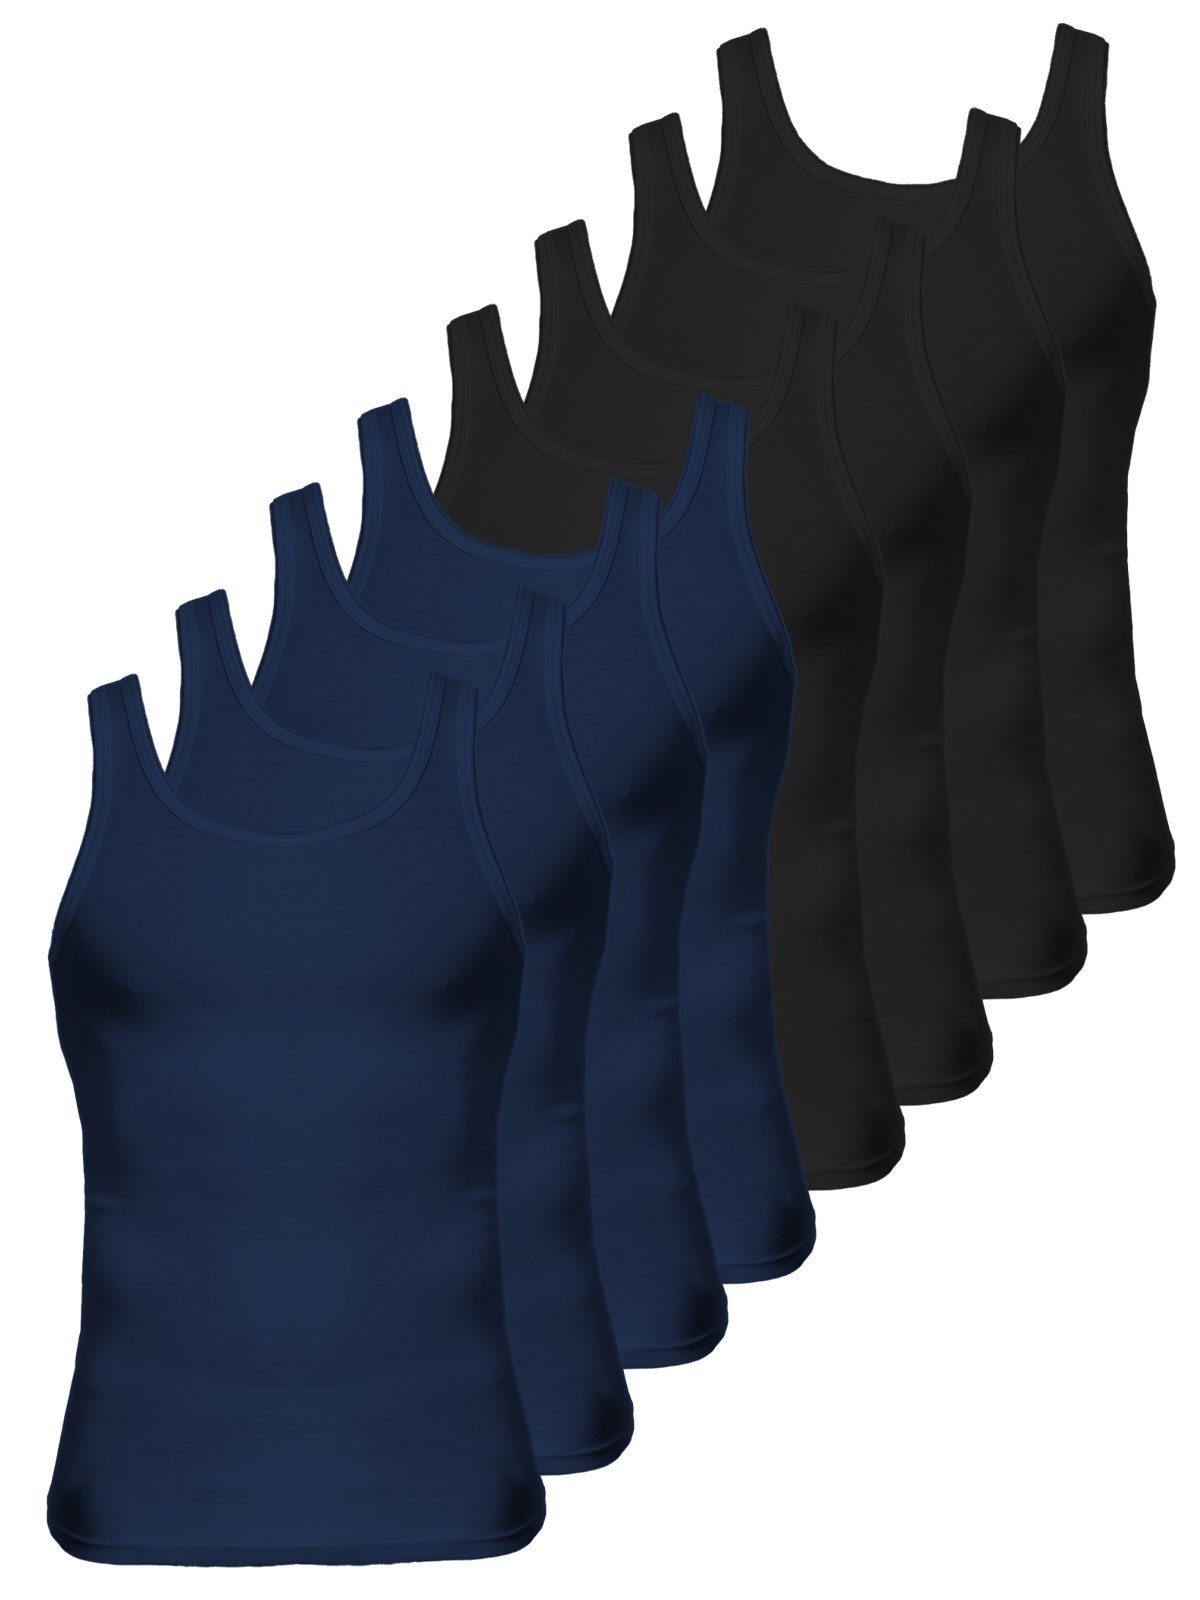 KUMPF Achselhemd 8er Sparpack Herren Unterhemd Bio Cotton (Spar-Set, 8-St) - schwarz navy